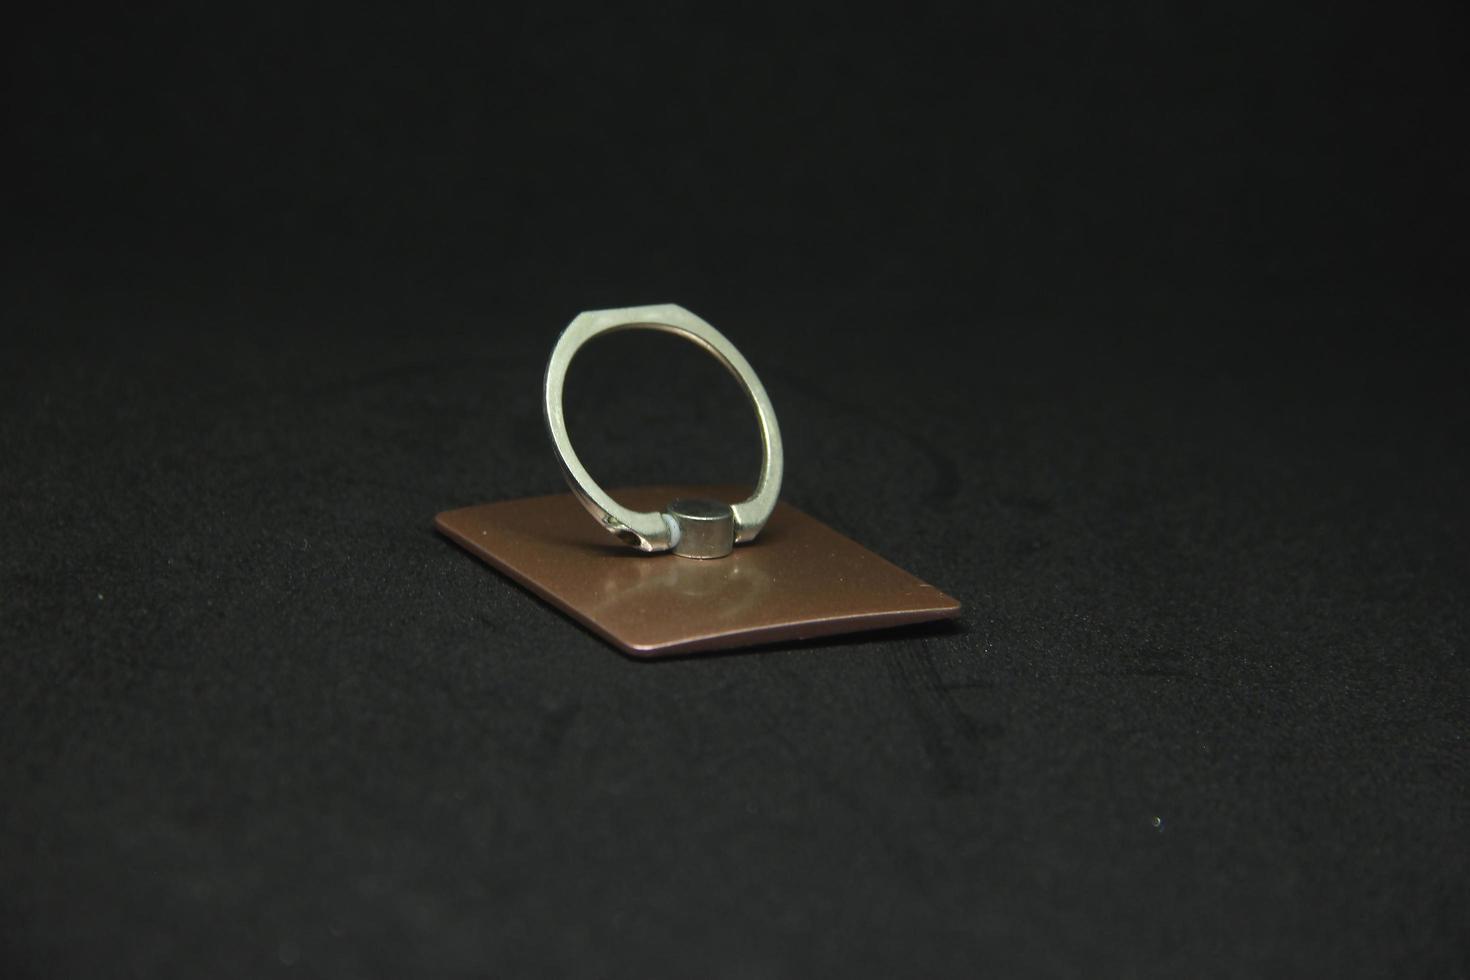 klein billig dünn Metall Eisen Telefon Finger Ring Griff Pop Steckdose zu Sein platziert hinter das Telefon. isoliert Objekt Foto auf schwarz Hintergrund.